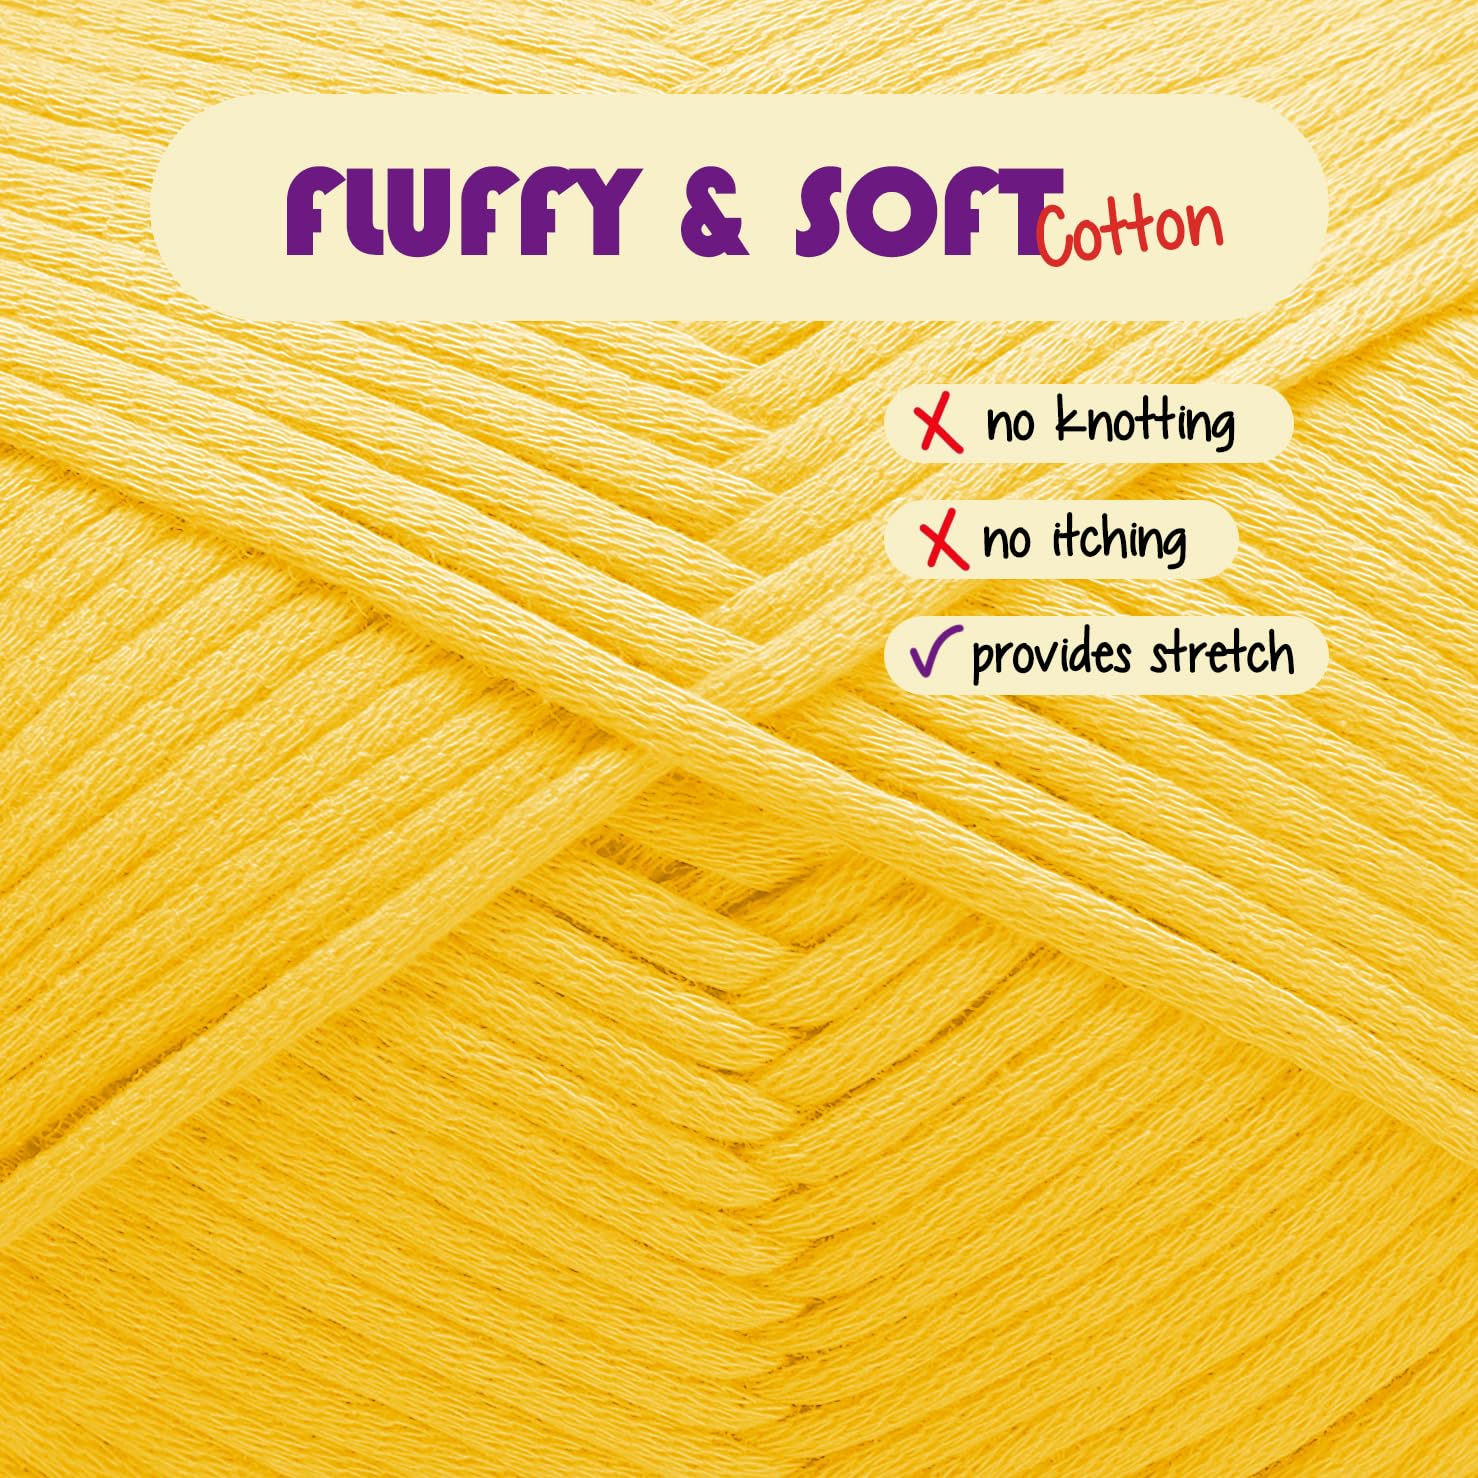 Soft Yarn for Crocheting – Crochet & Knitting Yarn, Beginner Yarn with Easy-to-See Stitches, 12 x 50g - 1200 Yards Amigurumi Yarn, Cotton-Nylon Blend Tshirt Yarn for Crocheting, Worsted Weight Yarn 4